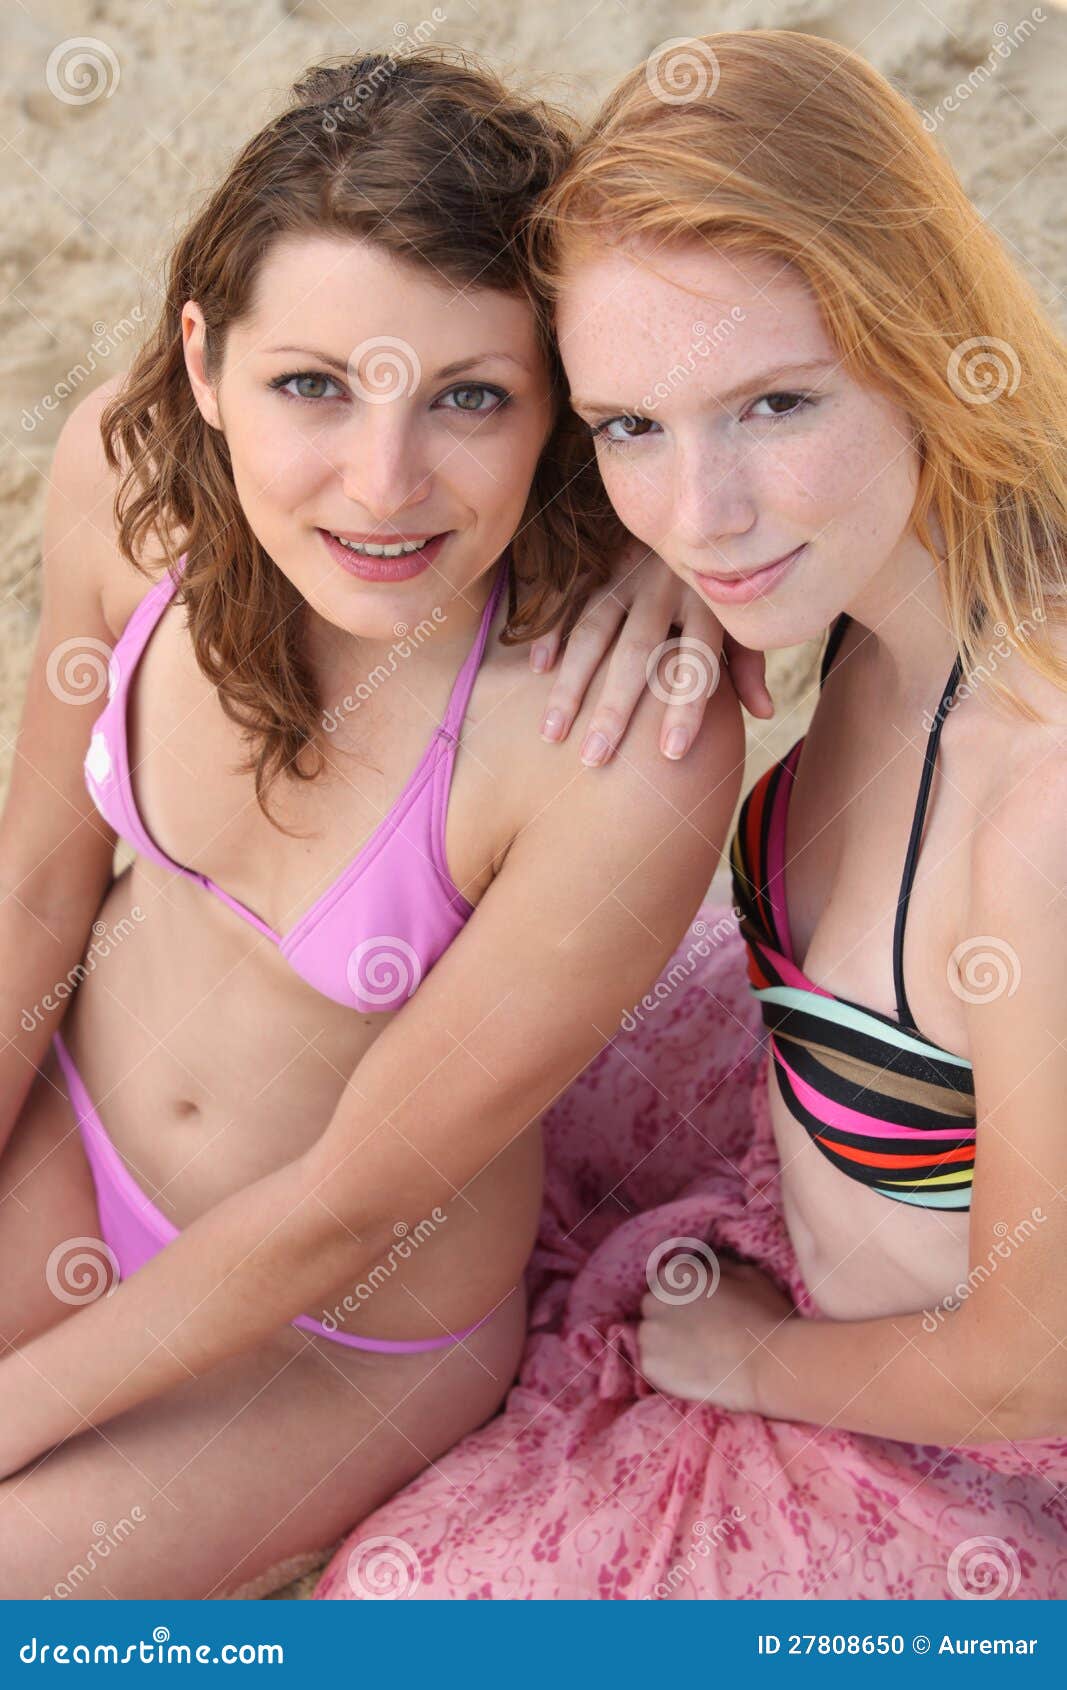 Teens In Bakini